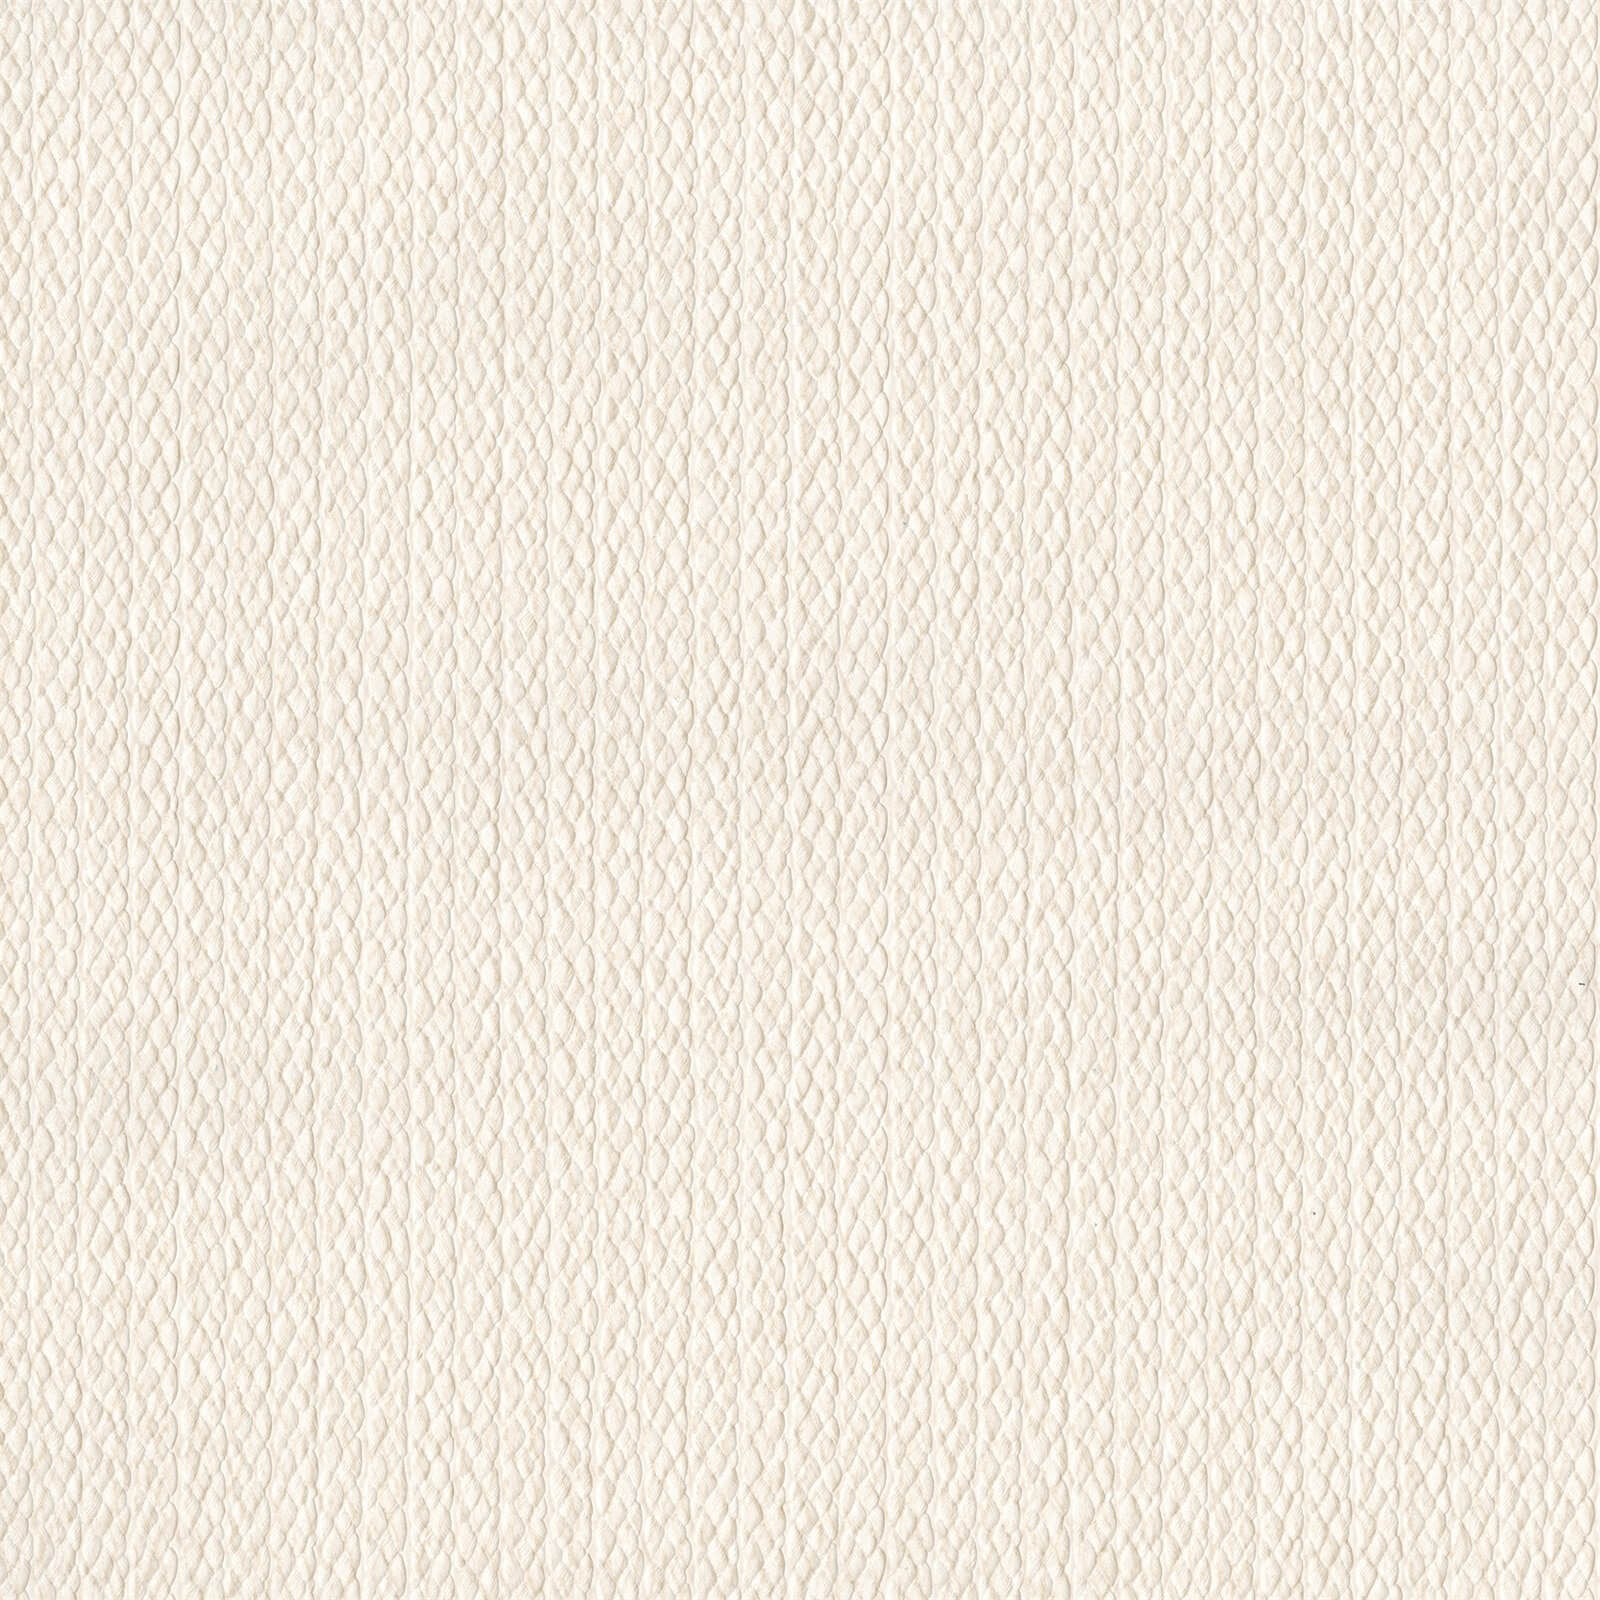 Holden Decor Lucia Plain Textured Beige Wallpaper